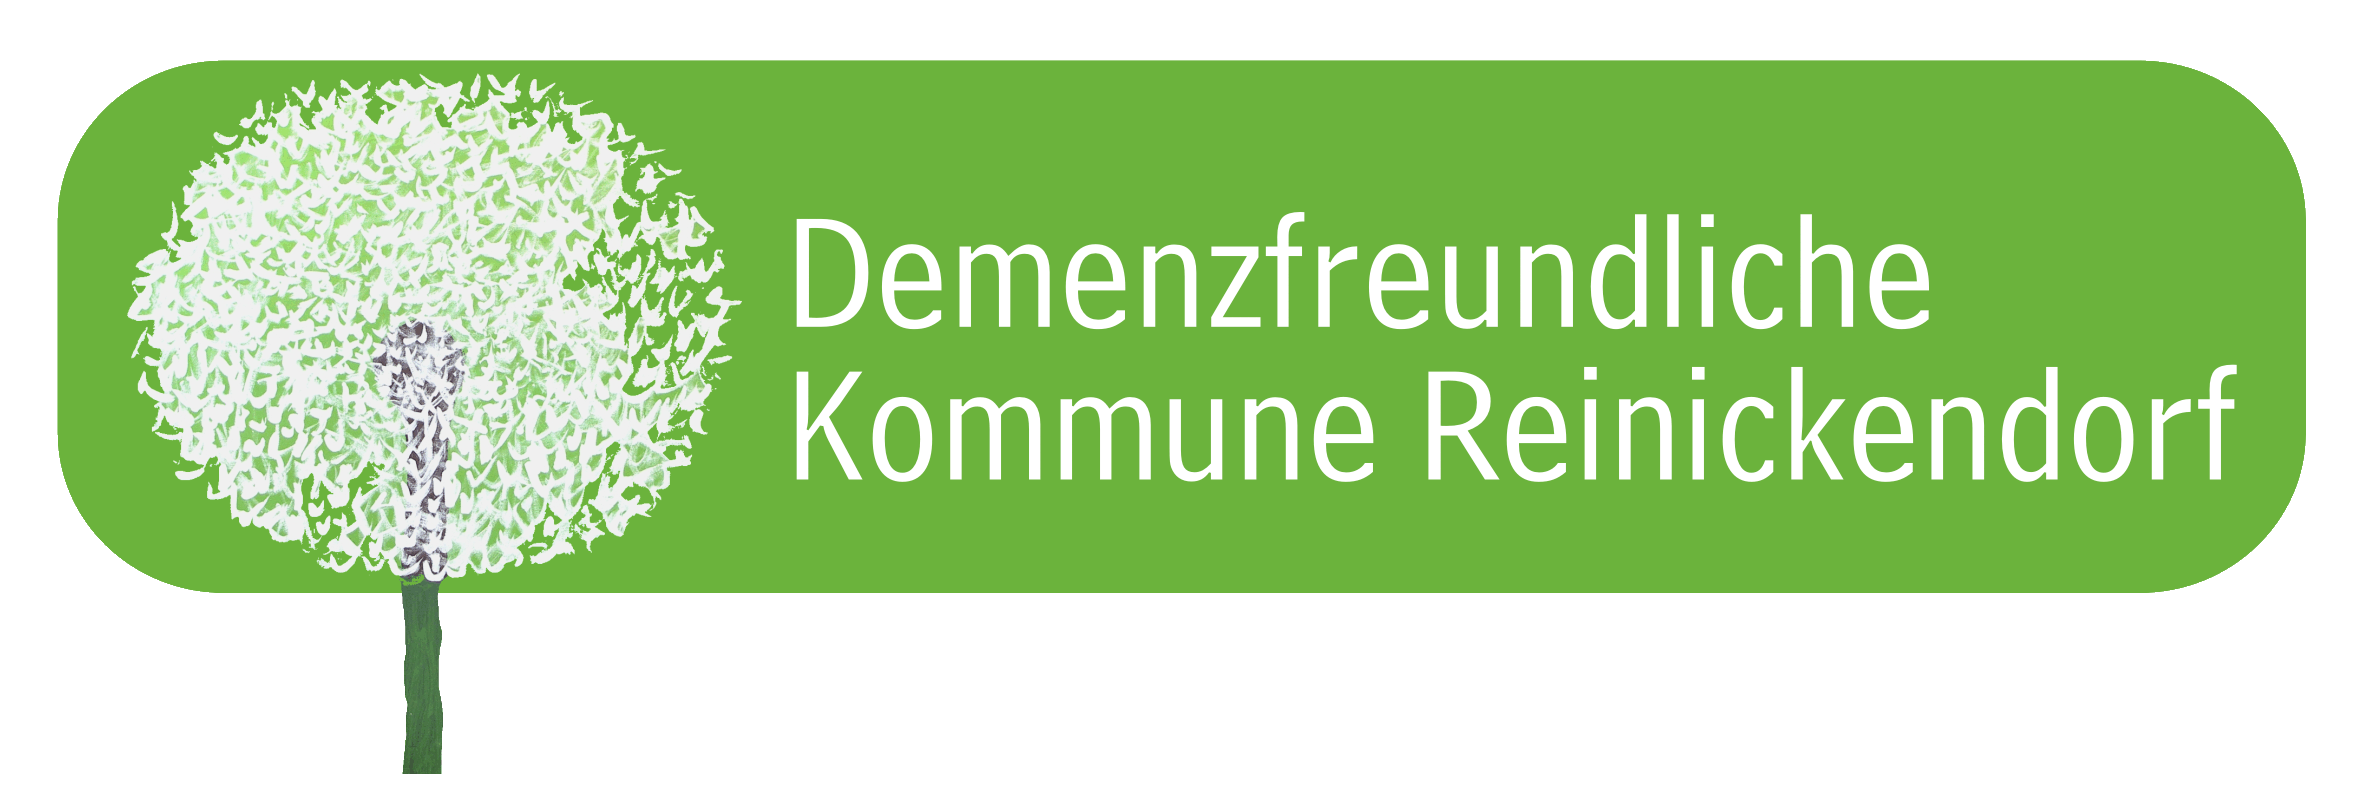 WeißseSchrift auf grünem HIntergrund: Demenzfreundliche Kommune Reinickendorf